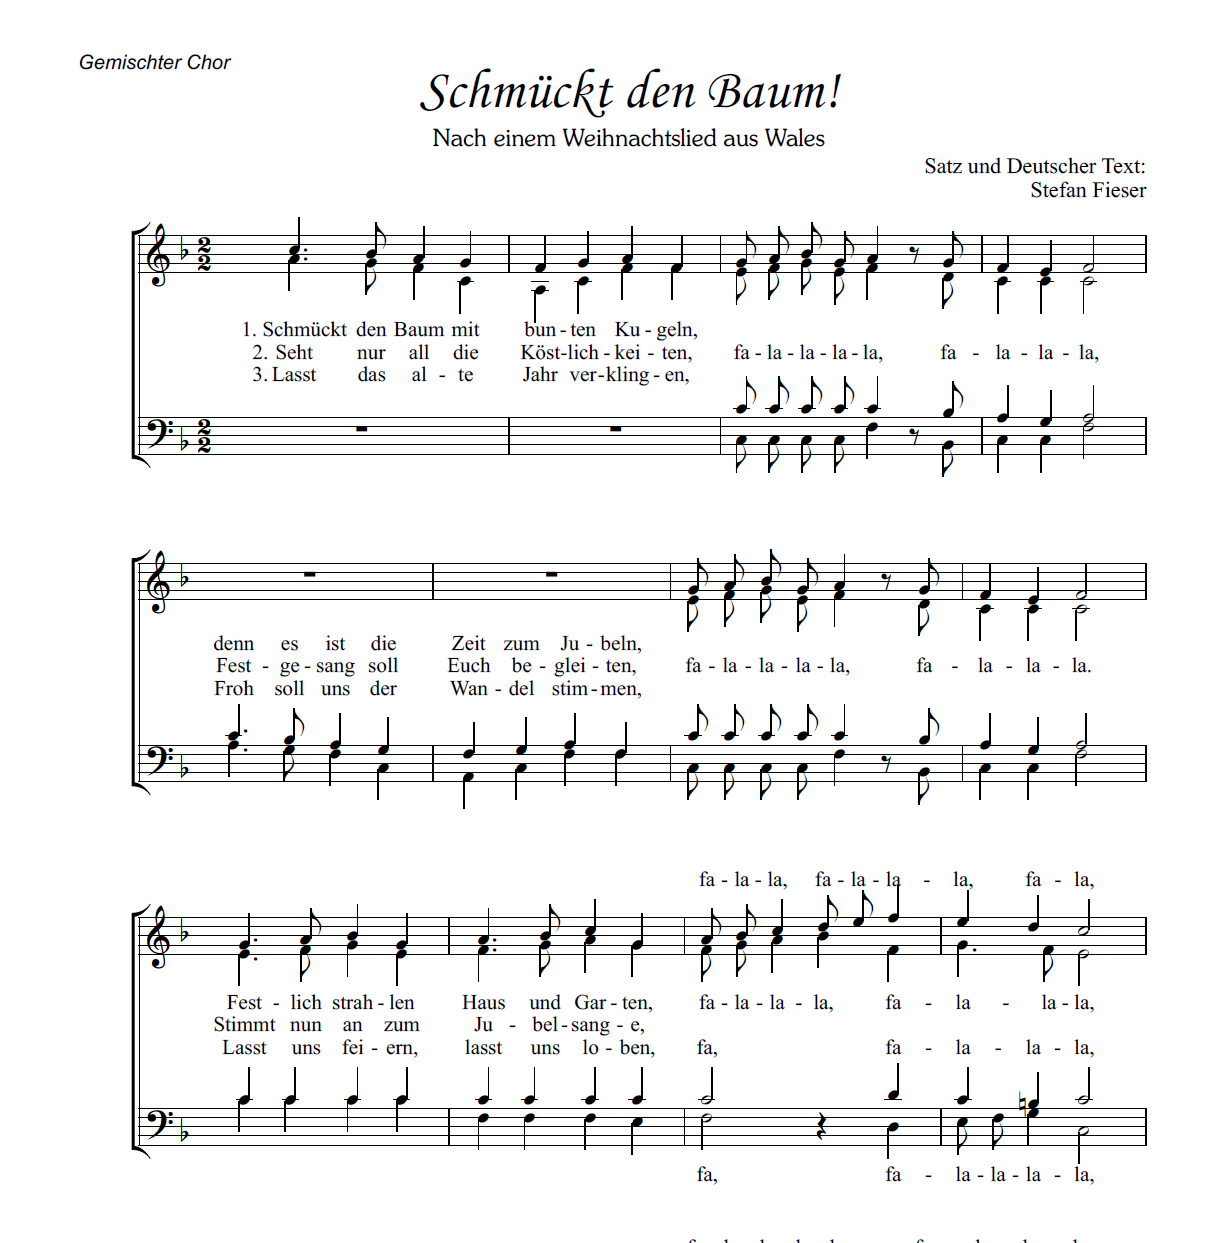 La-Le-Lu  Chornoten für gemischten Chor, 4-stimmig, SATB +